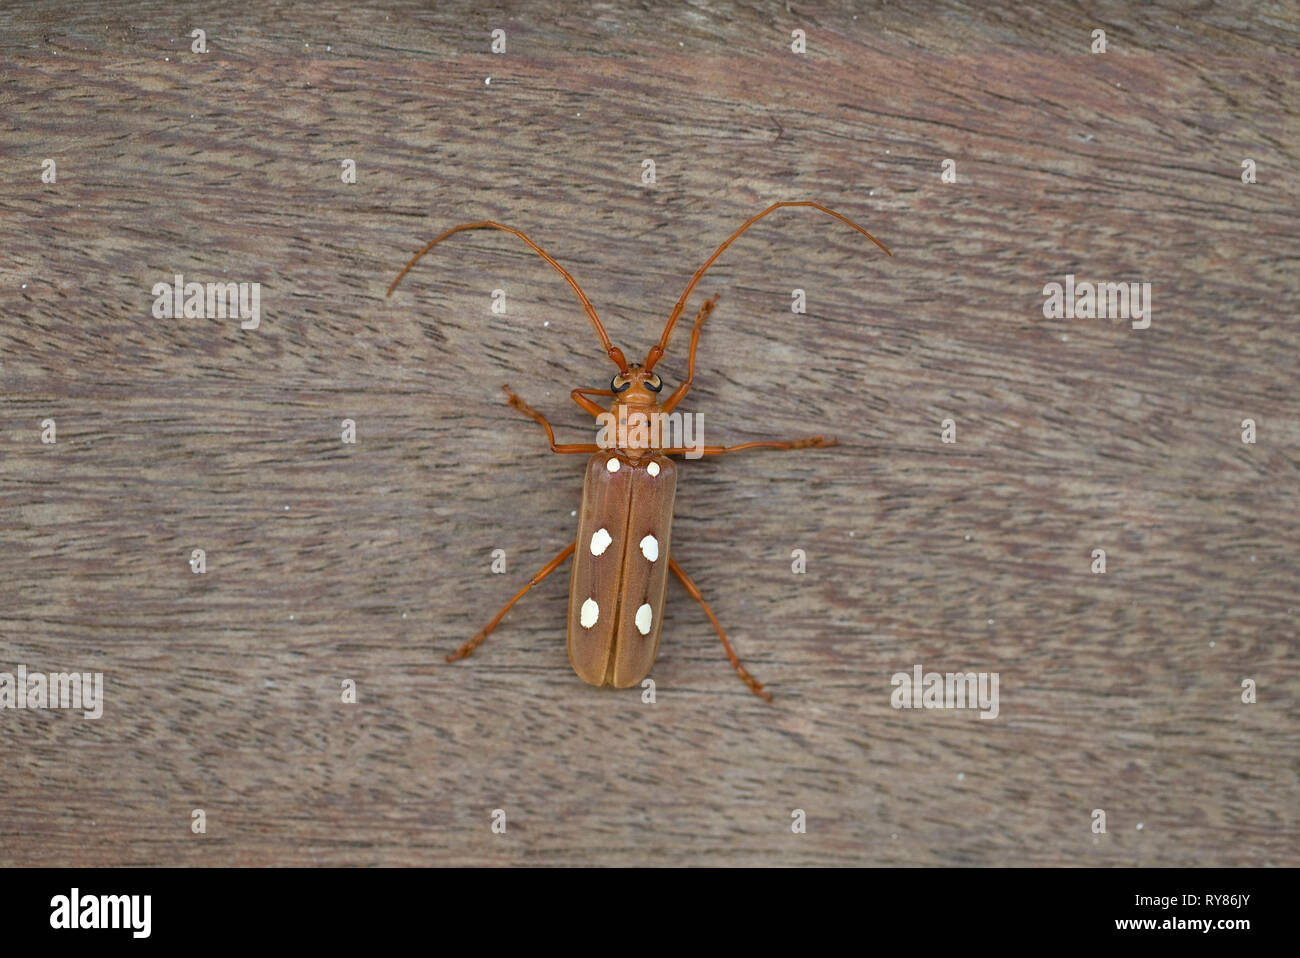 Las especies de escarabajos Longhorn (Coccoderus amazonicus) Foto de stock